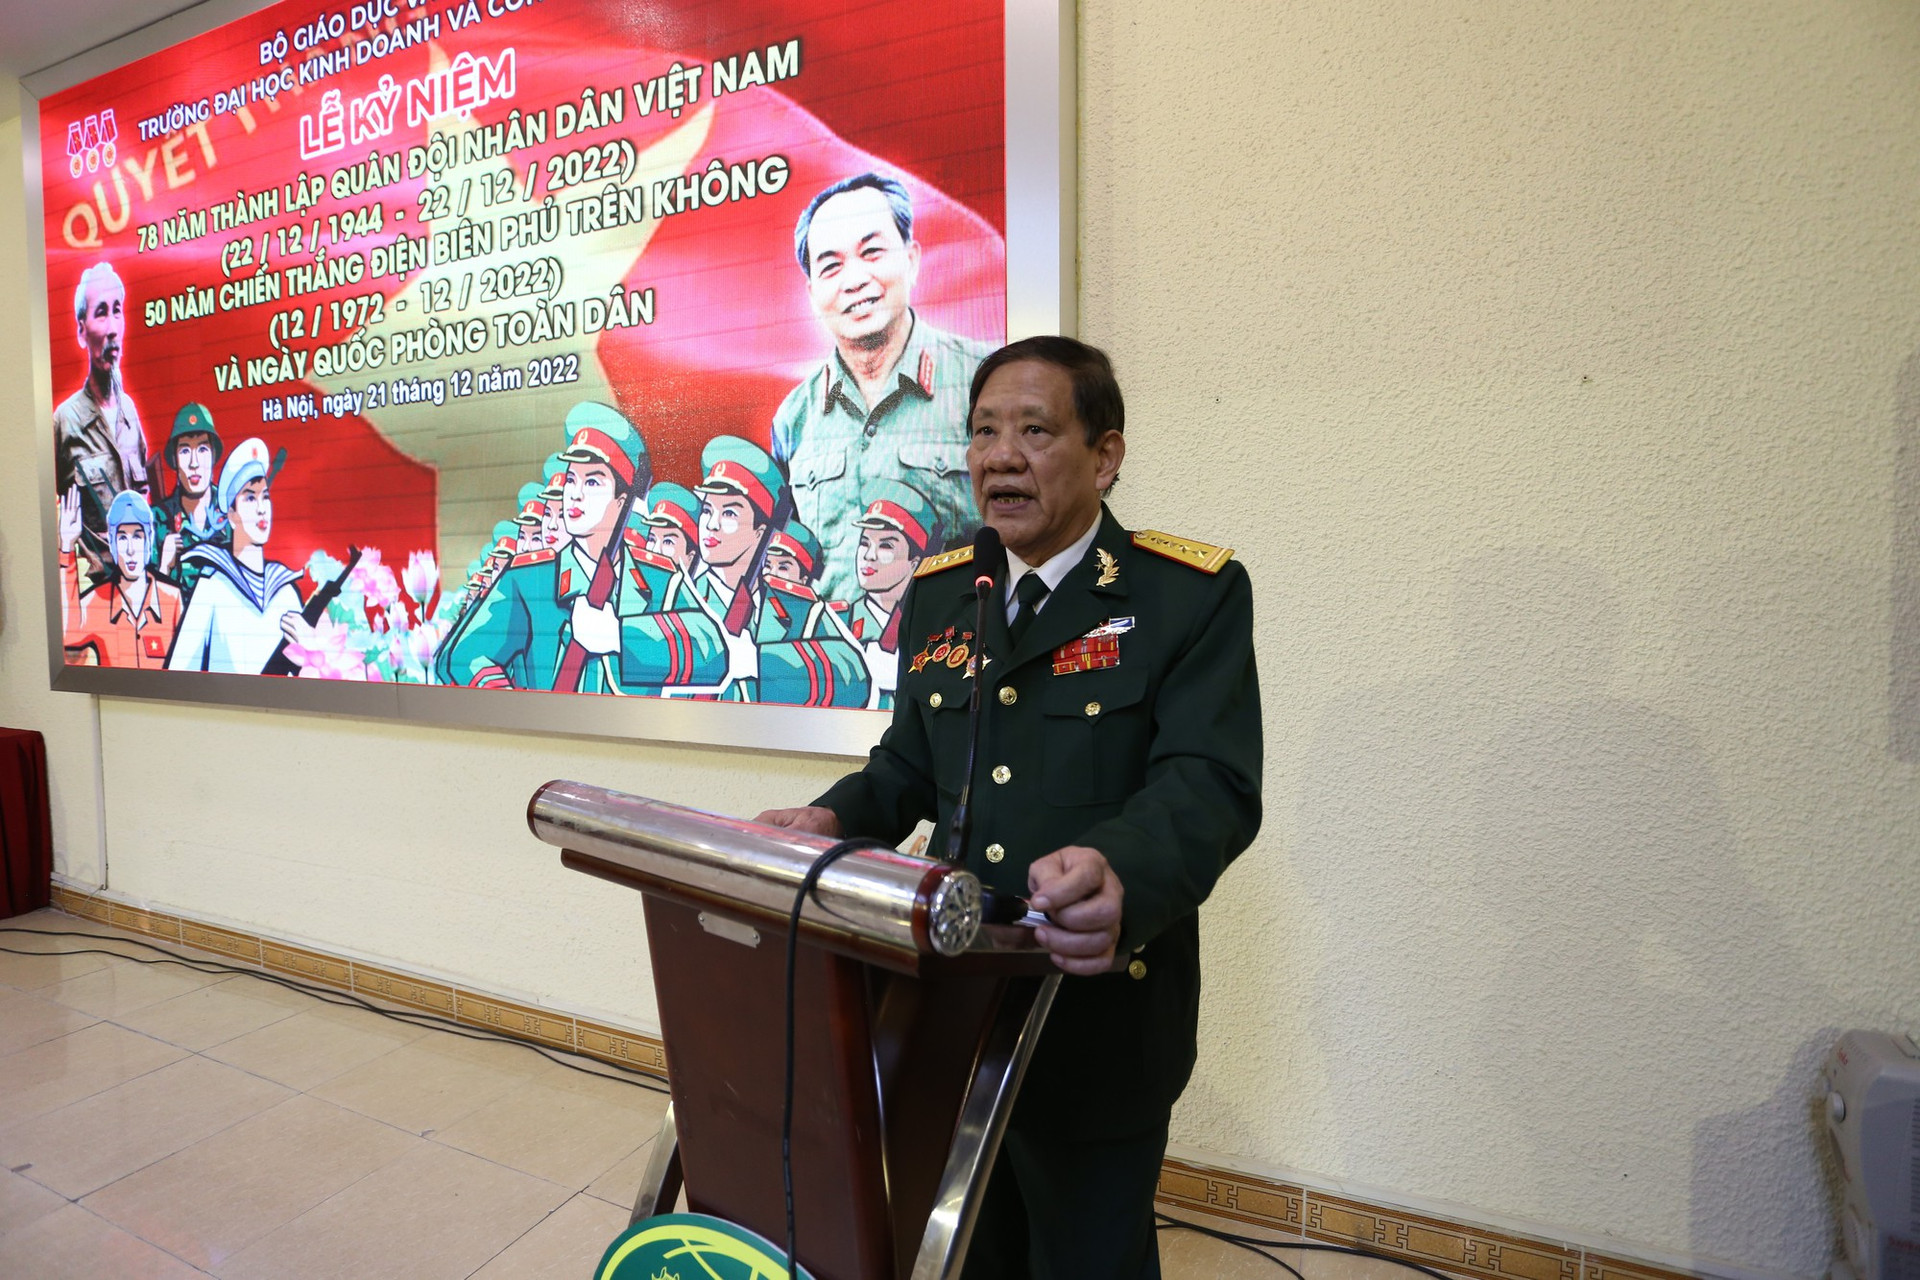 Trường Đại học Kinh doanh và Công nghệ Hà Nội kỷ niệm 78 năm thành lập Quân đội Nhân dân Việt Nam  - Ảnh 2.